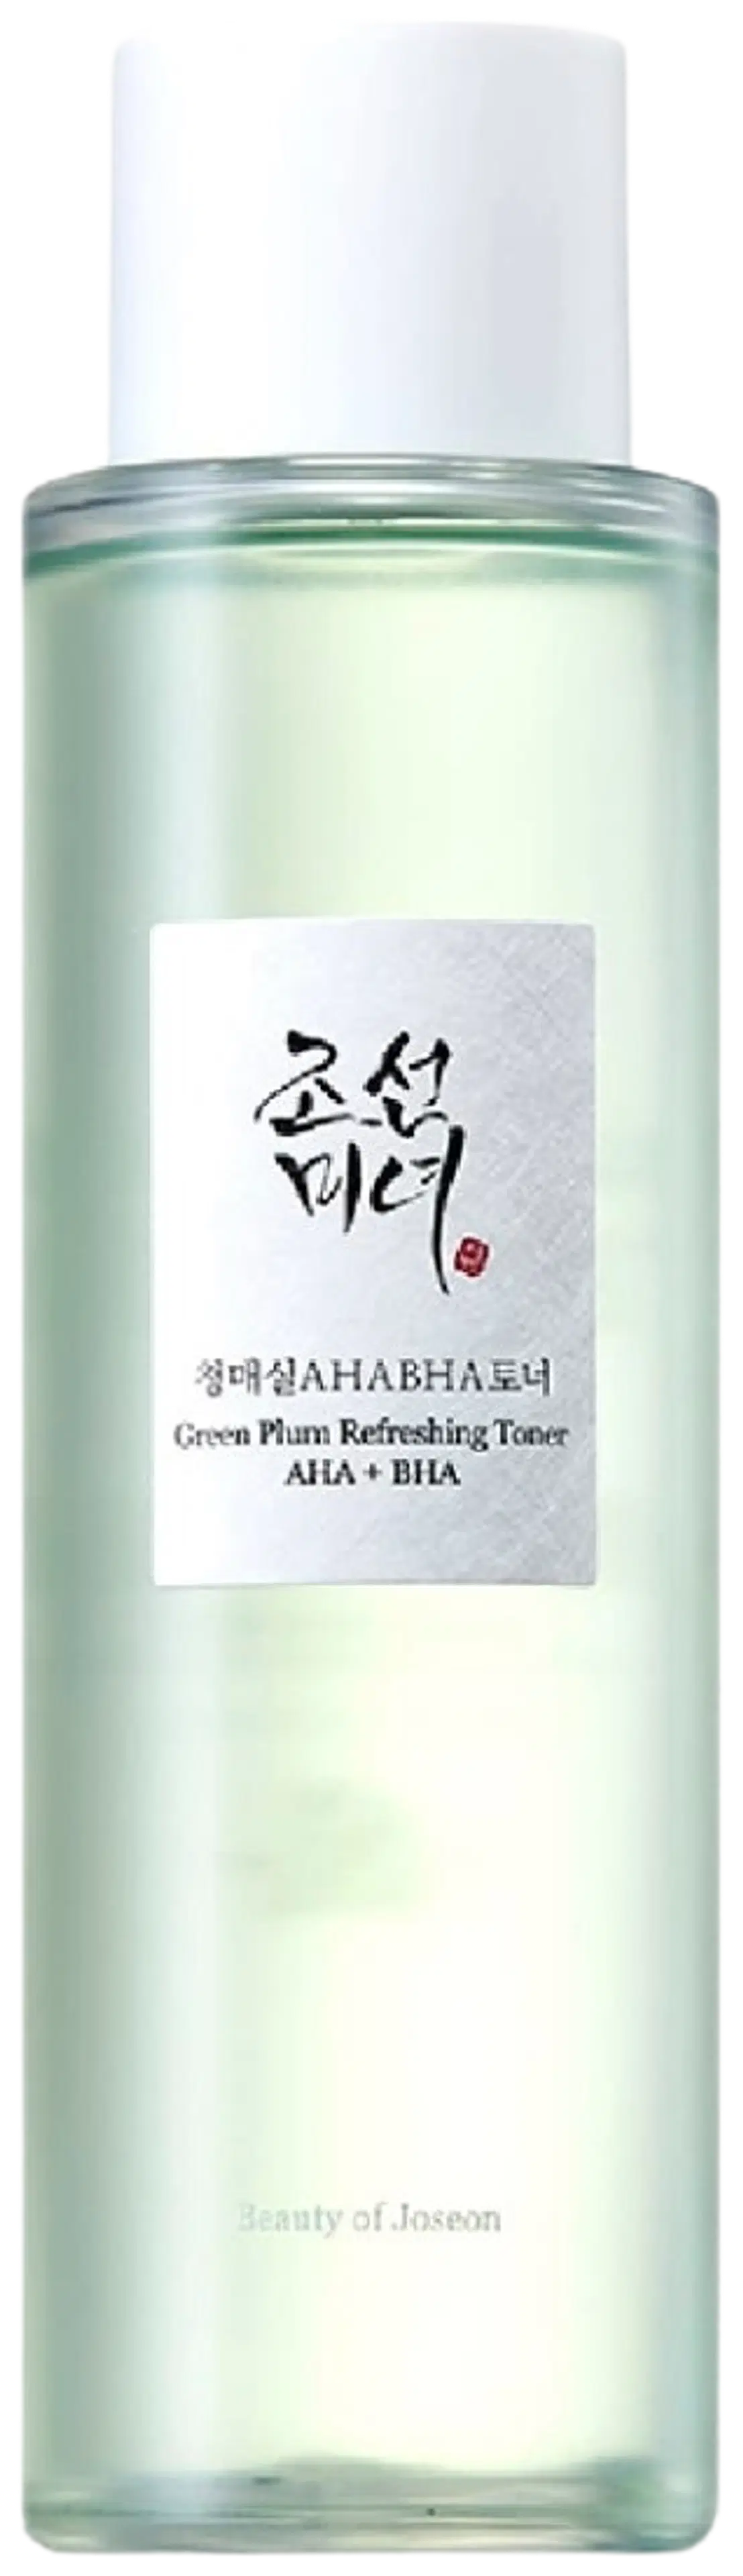 Beauty of Joseon Green Plum Refreshing Toner : AHA+BHA kasvovesi 150 ml